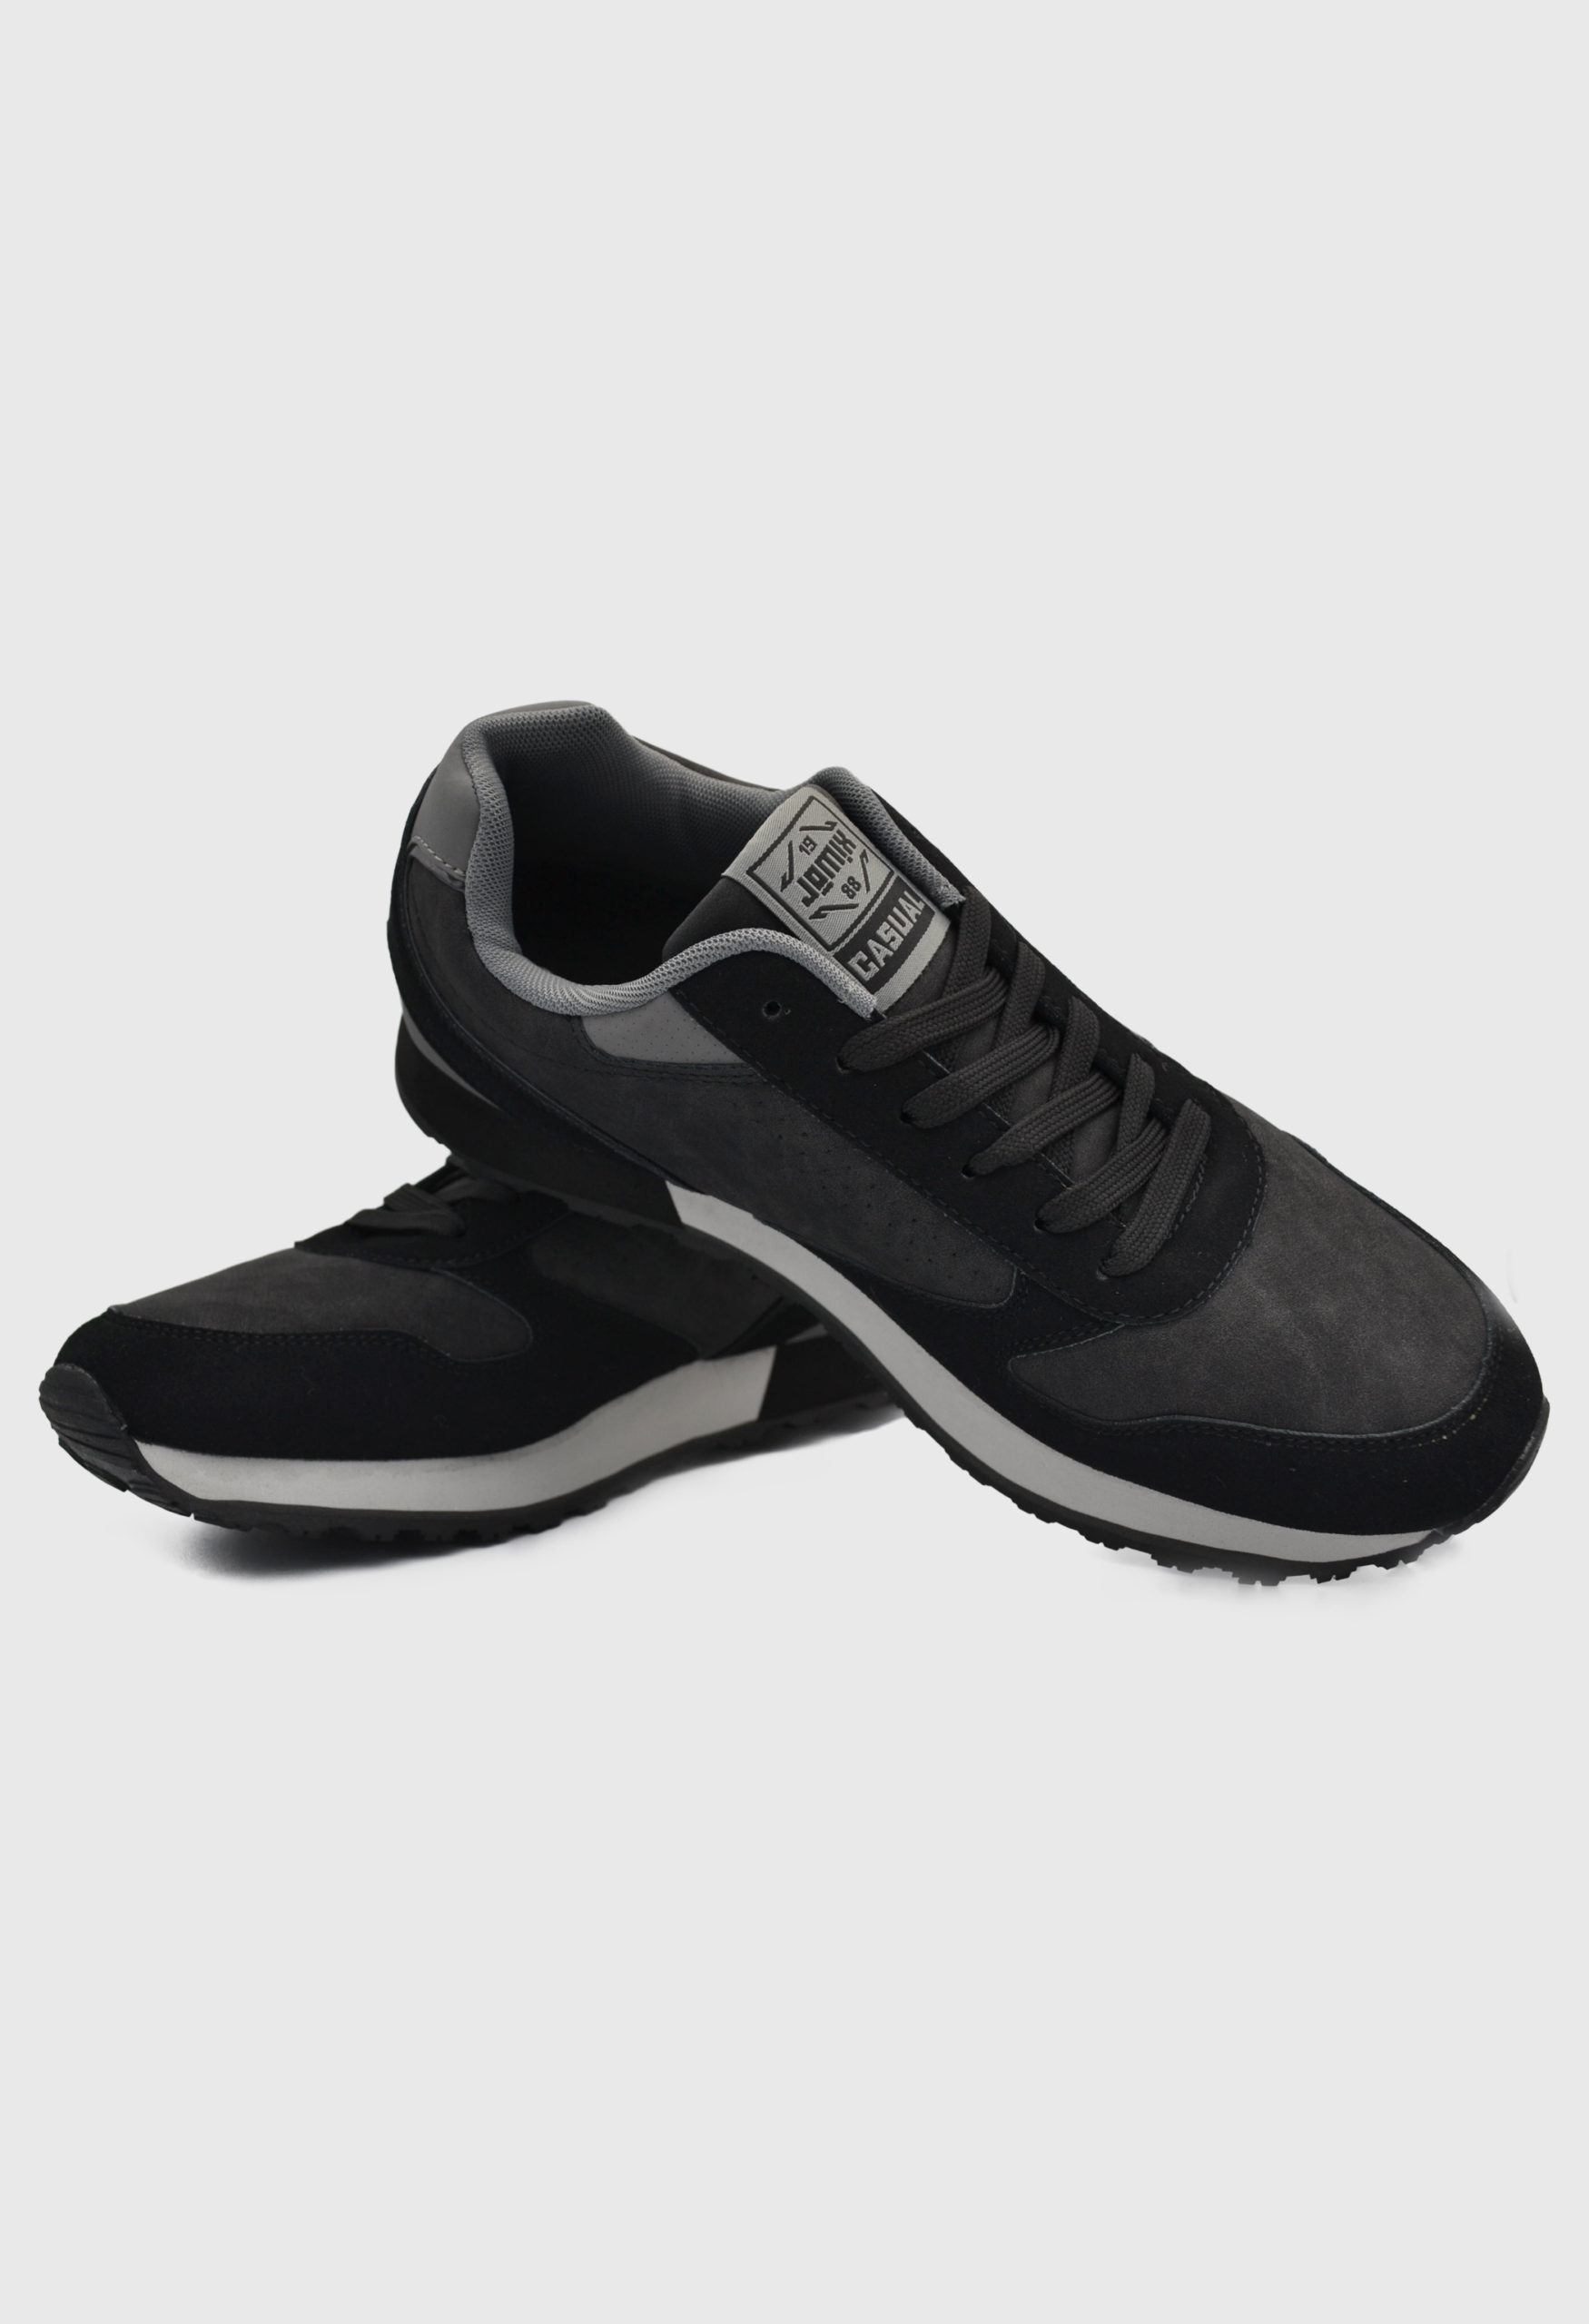 Ανδρικά Αθλητικά Παπούτσια για Τρέξιμο Μαύρο / 7698035 ΑΘΛΗΤΙΚΑ & SNEAKERS joya.gr